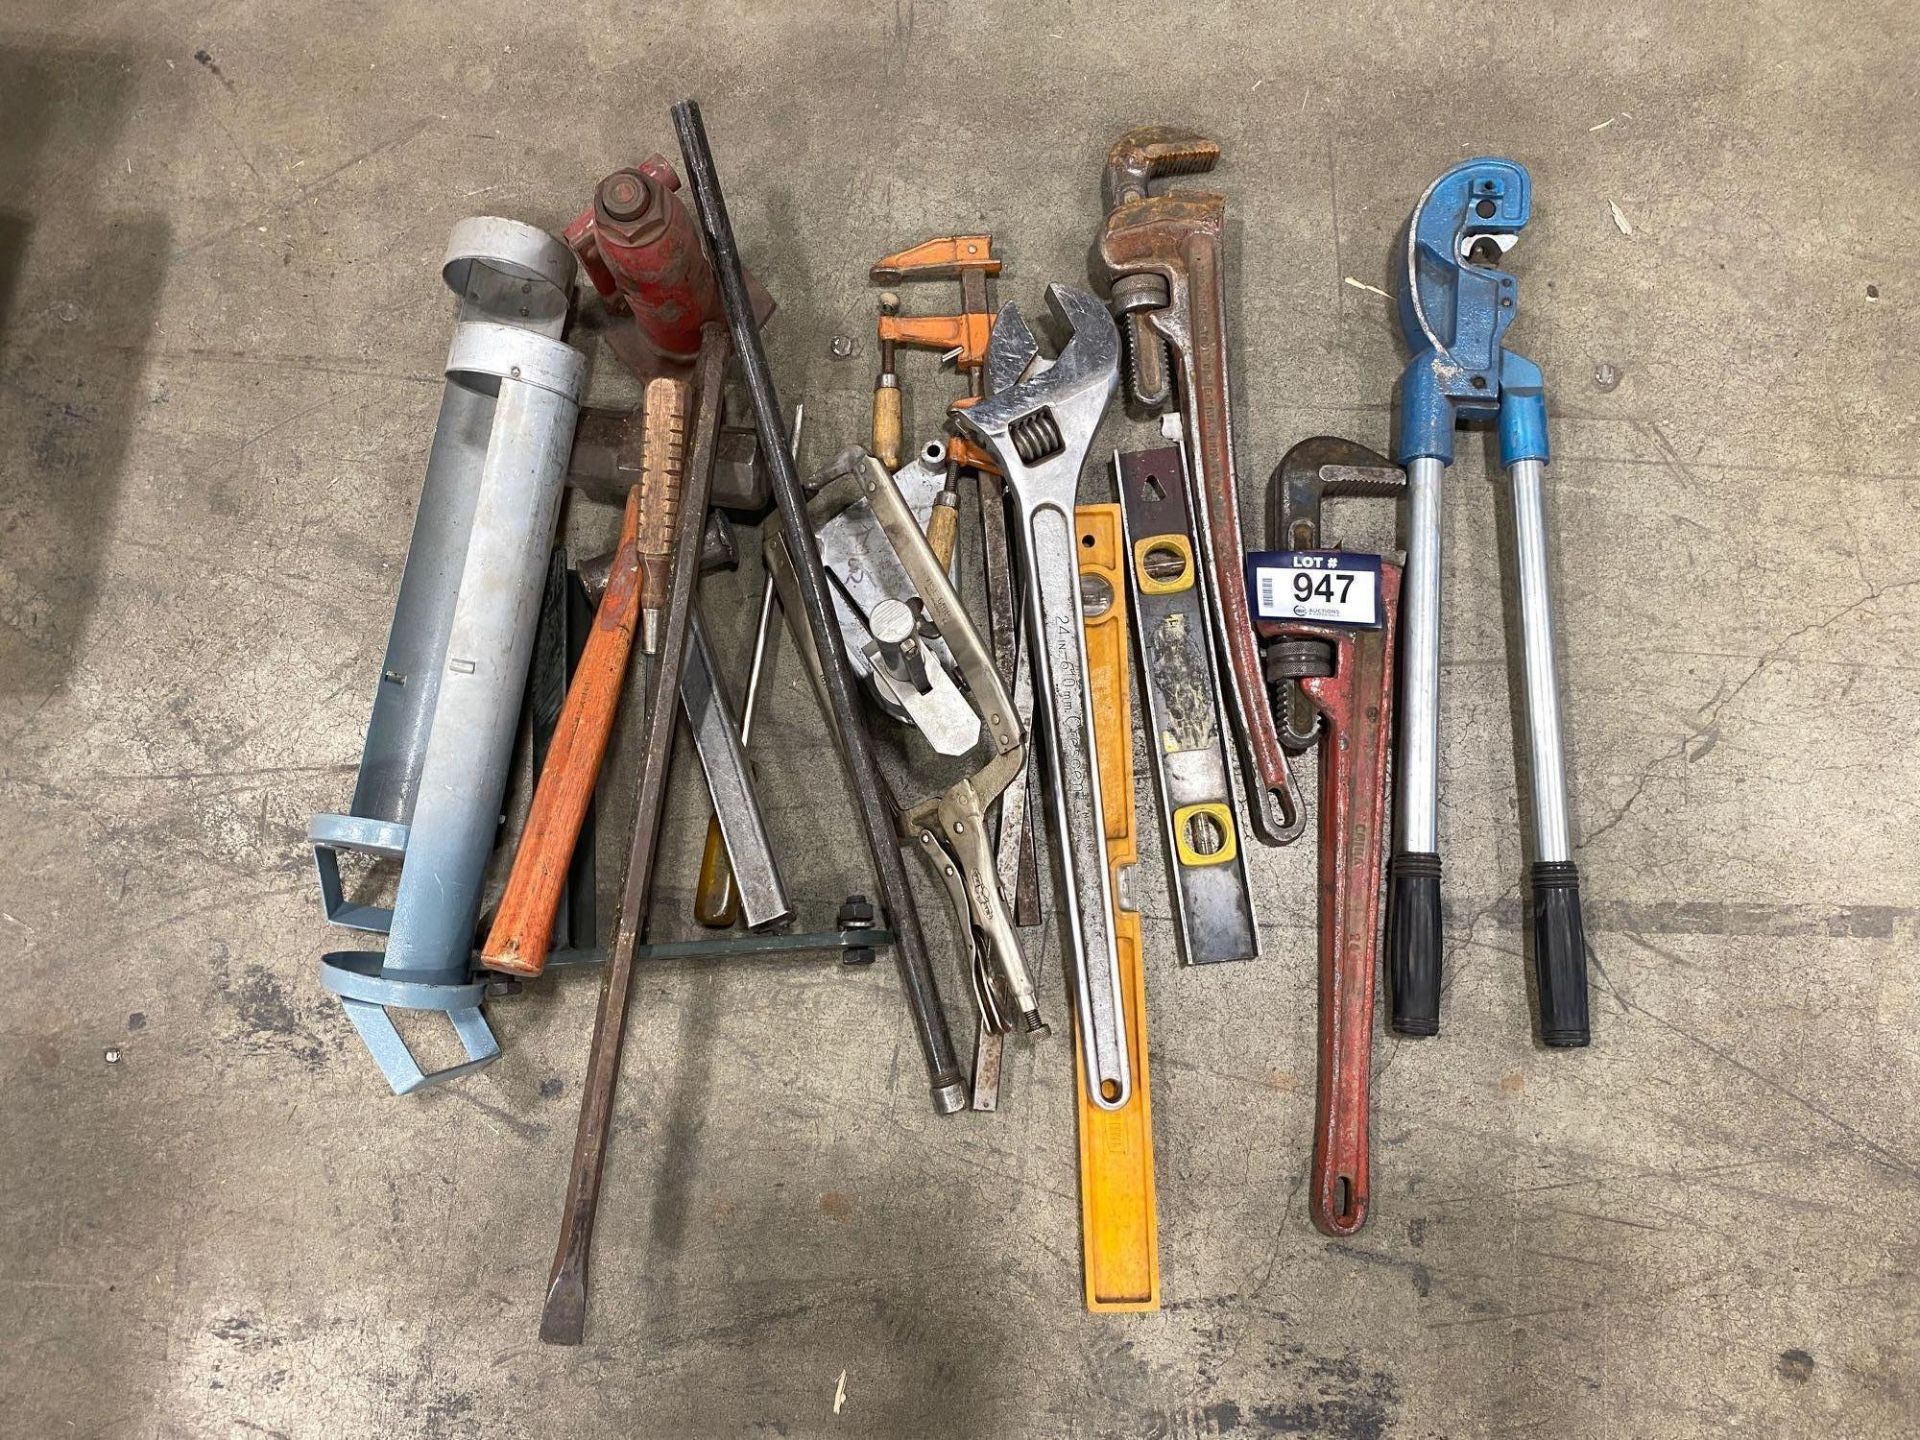 Lot of Asst. Tools Including, Bottle Jack, Crimper, Pipe Wrench, Sledge Hammer, Levels, etc.